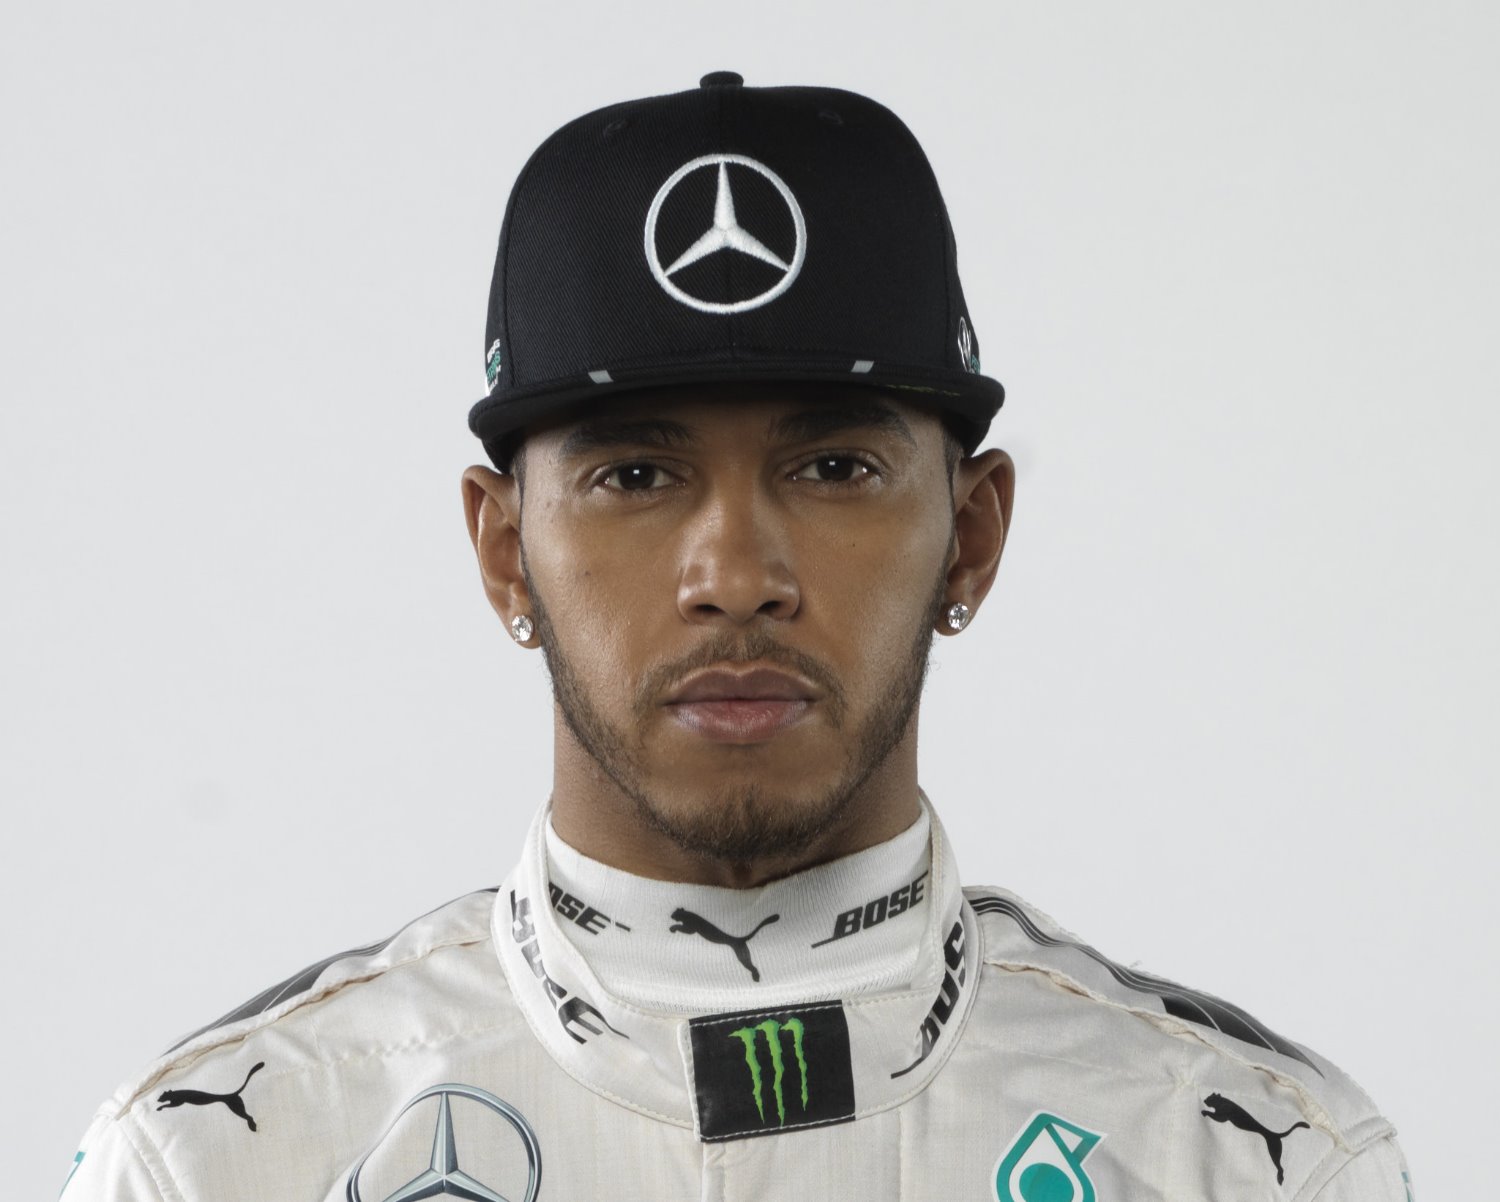 Hamilton's focus questioned